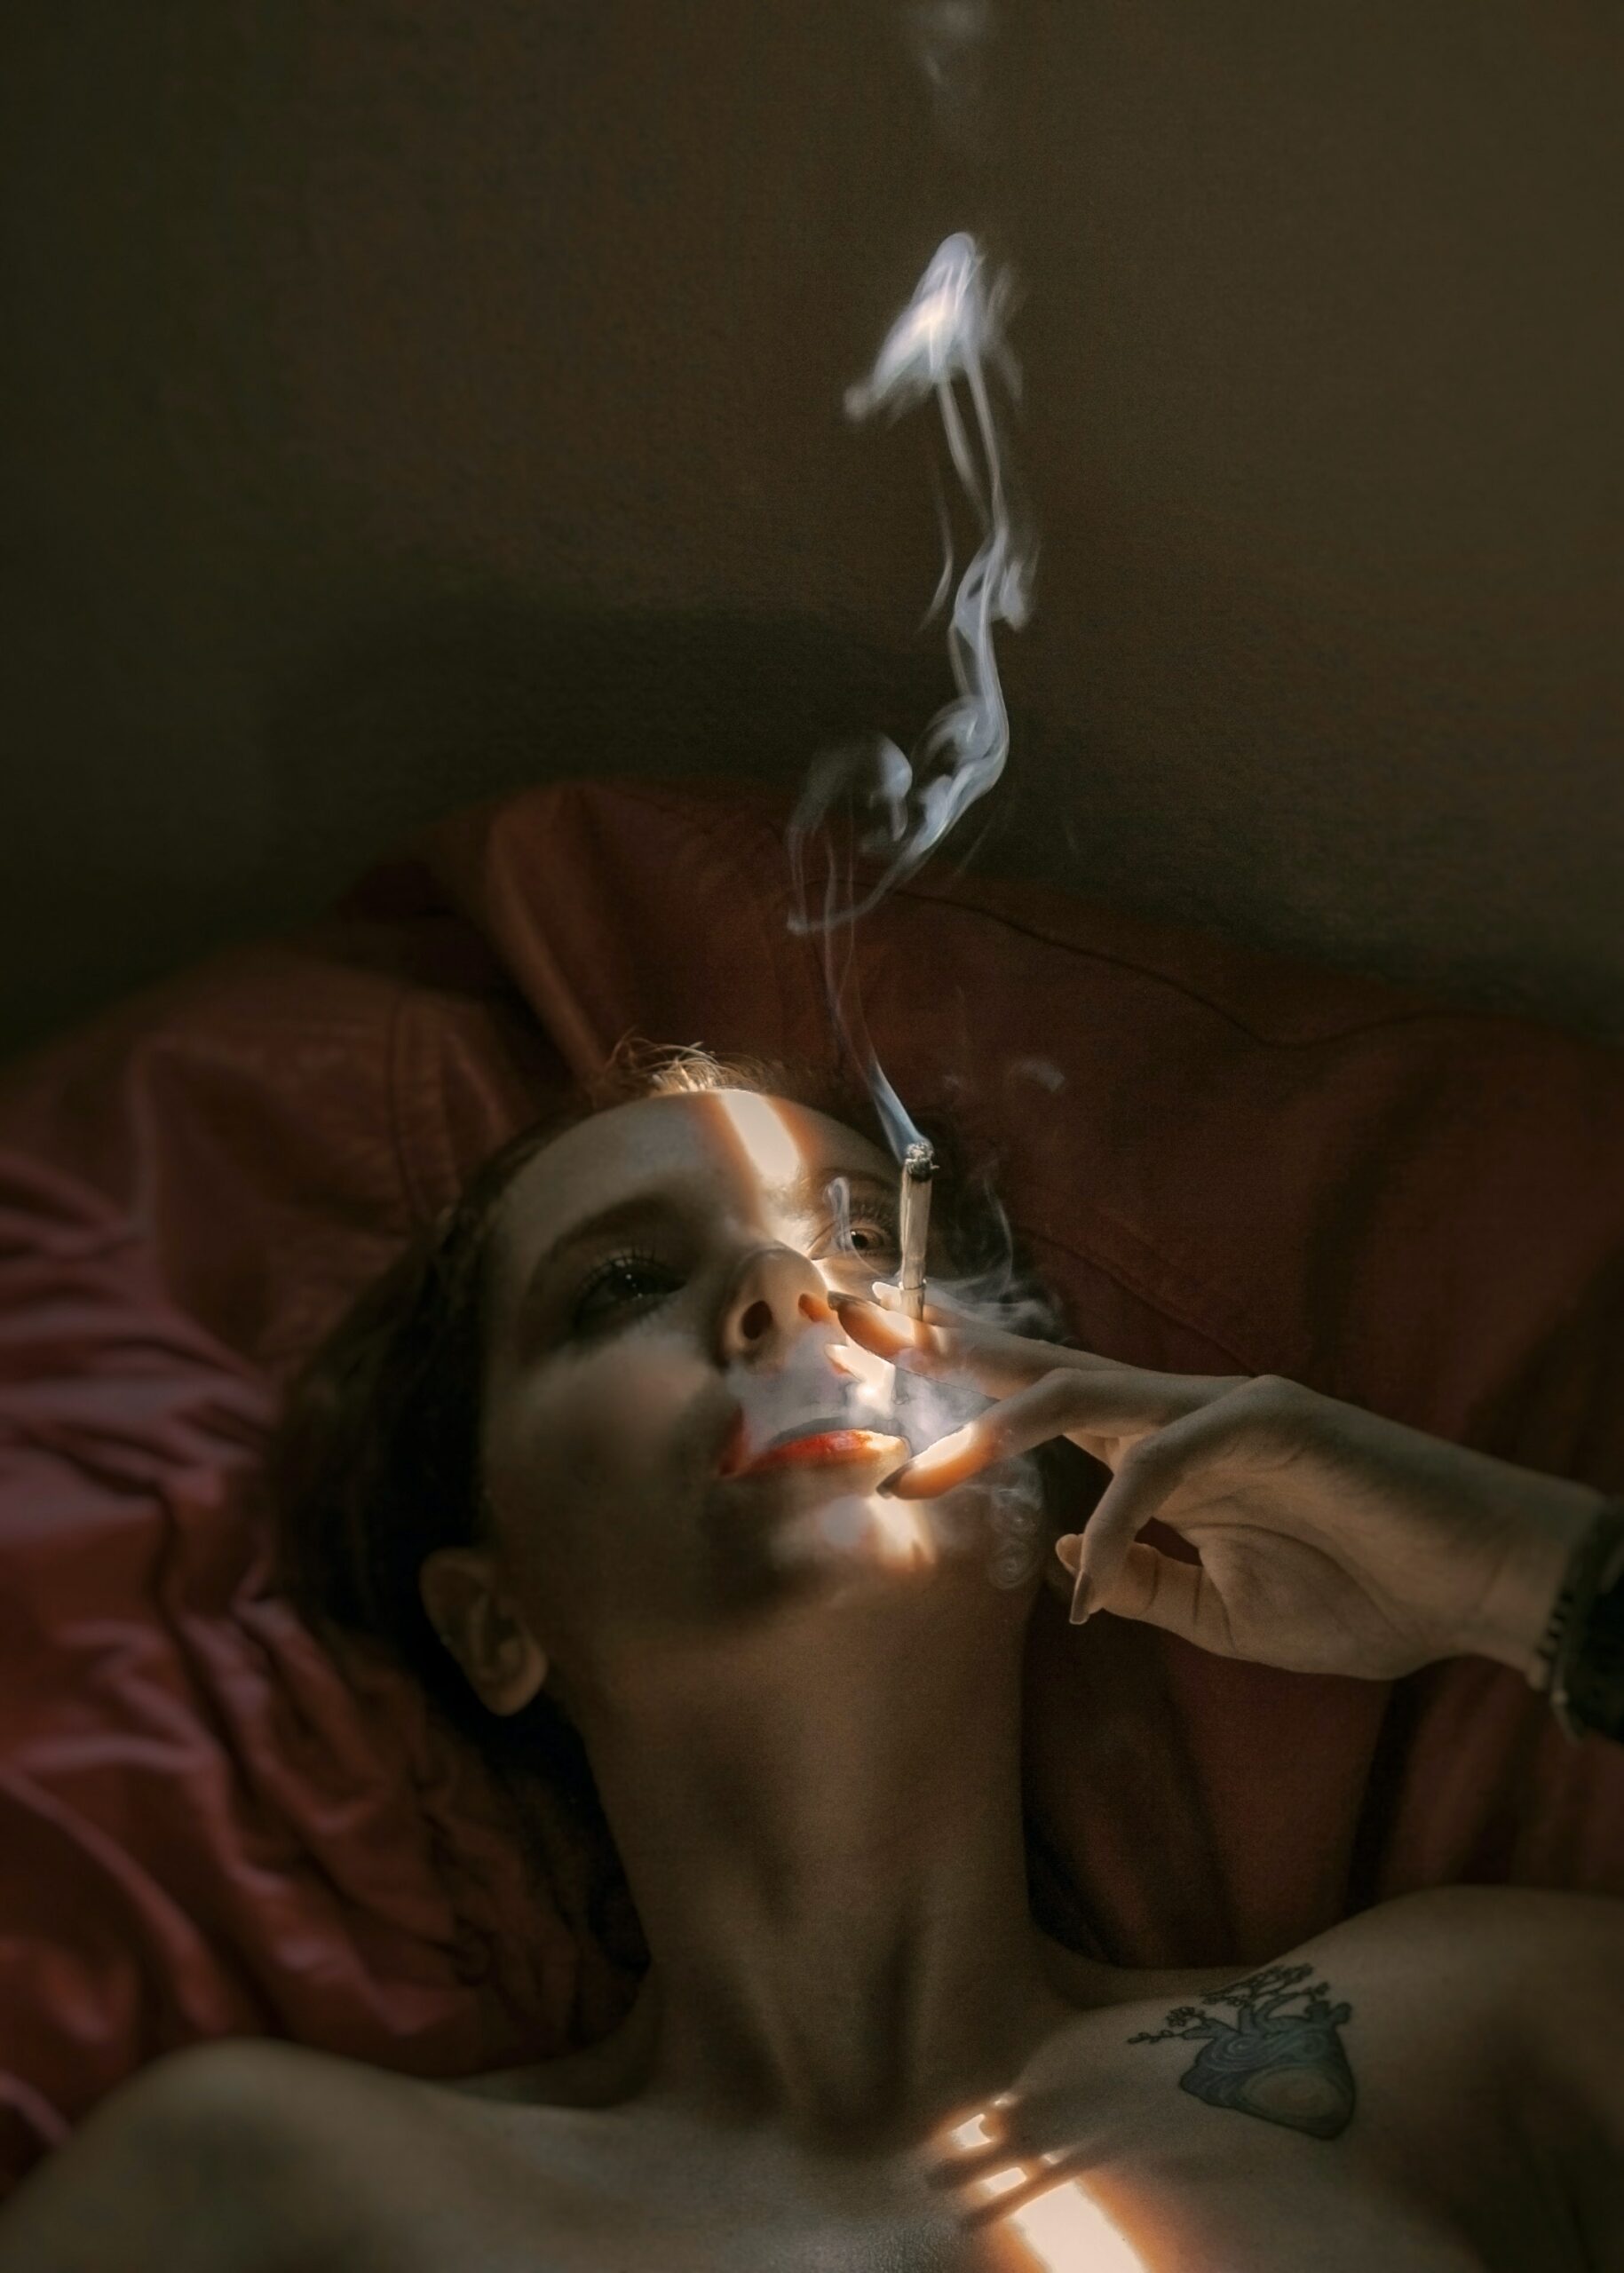 Femme fume dans son lit illustre Addiction et fonctionnements limitesiction et fonctionnements limites